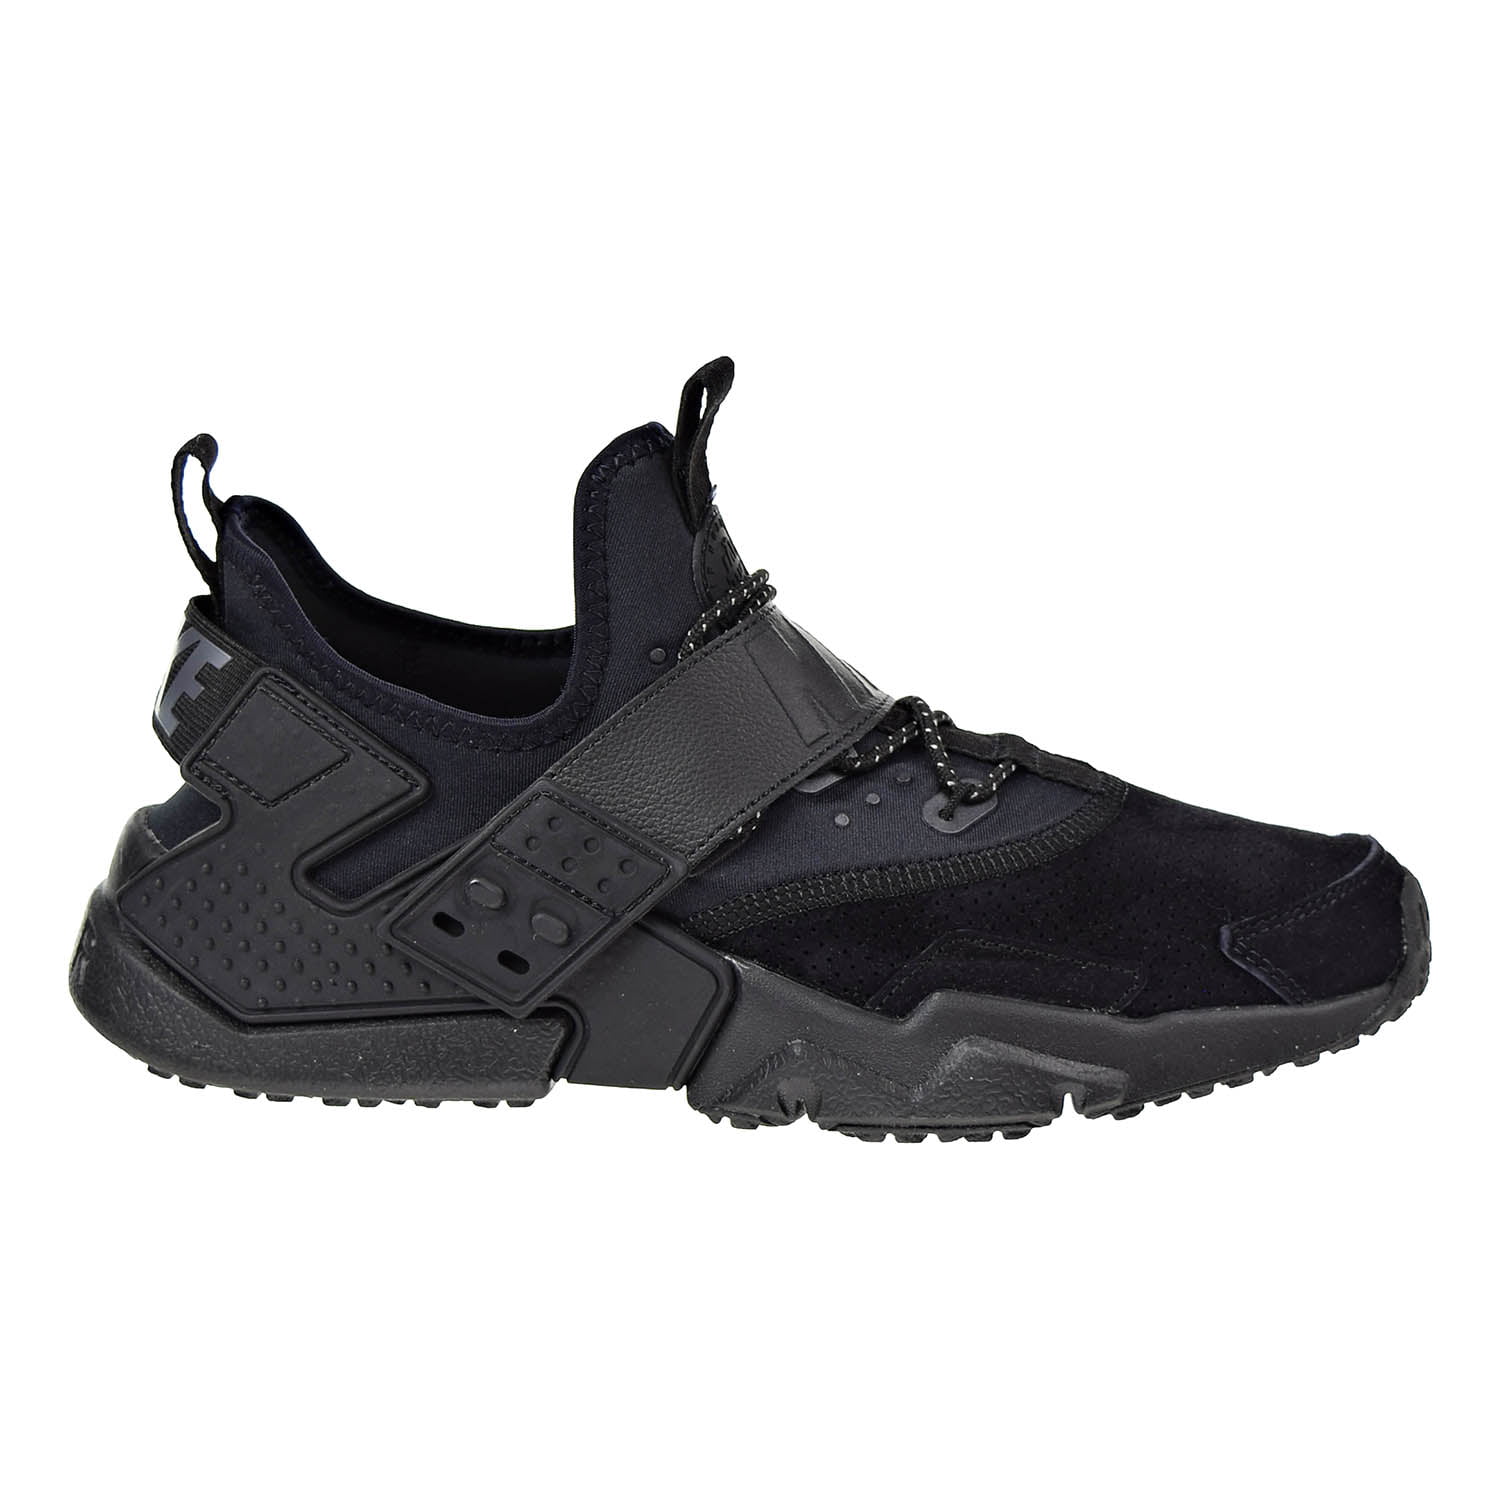 Nike Air Huarache Drift Premium Men's Shoes Black/Anthracite ah7335-001 ...